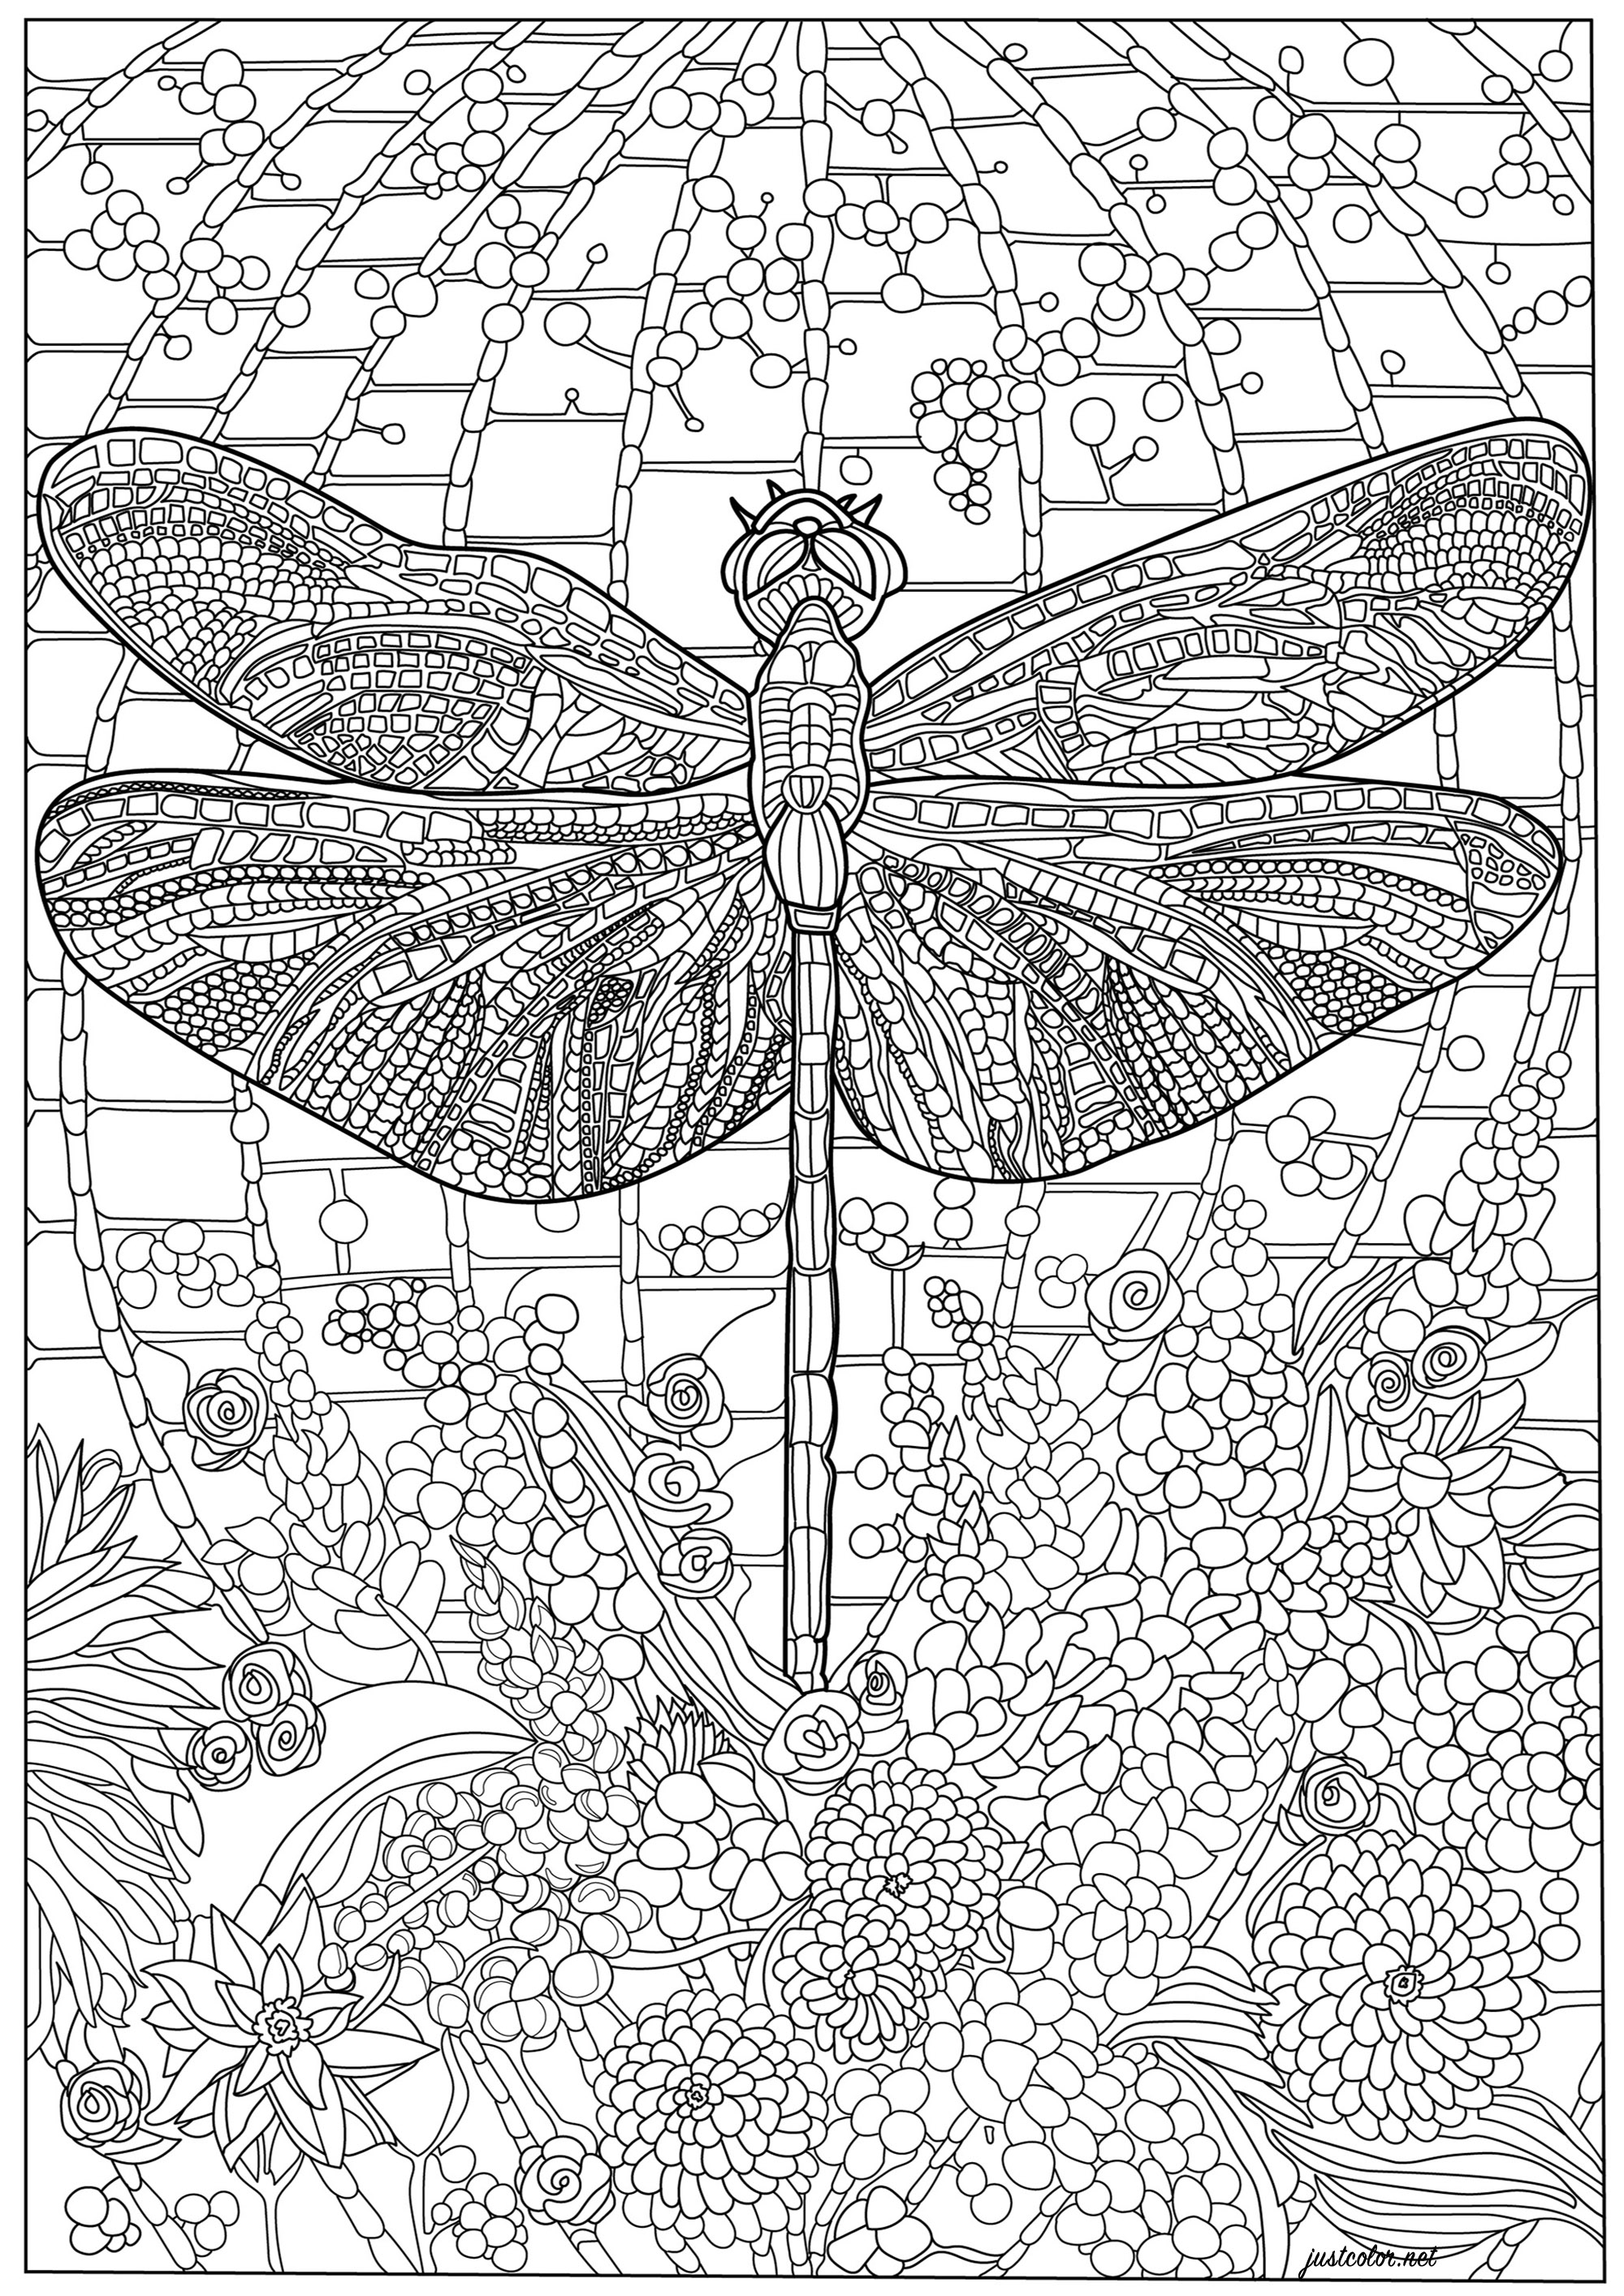 Libellule et nombreux détails complexes. Un coloriage fourmillant de détails, à la fois dans le corps de la libellule et dans l'arrière-plan, Artiste : Morgan